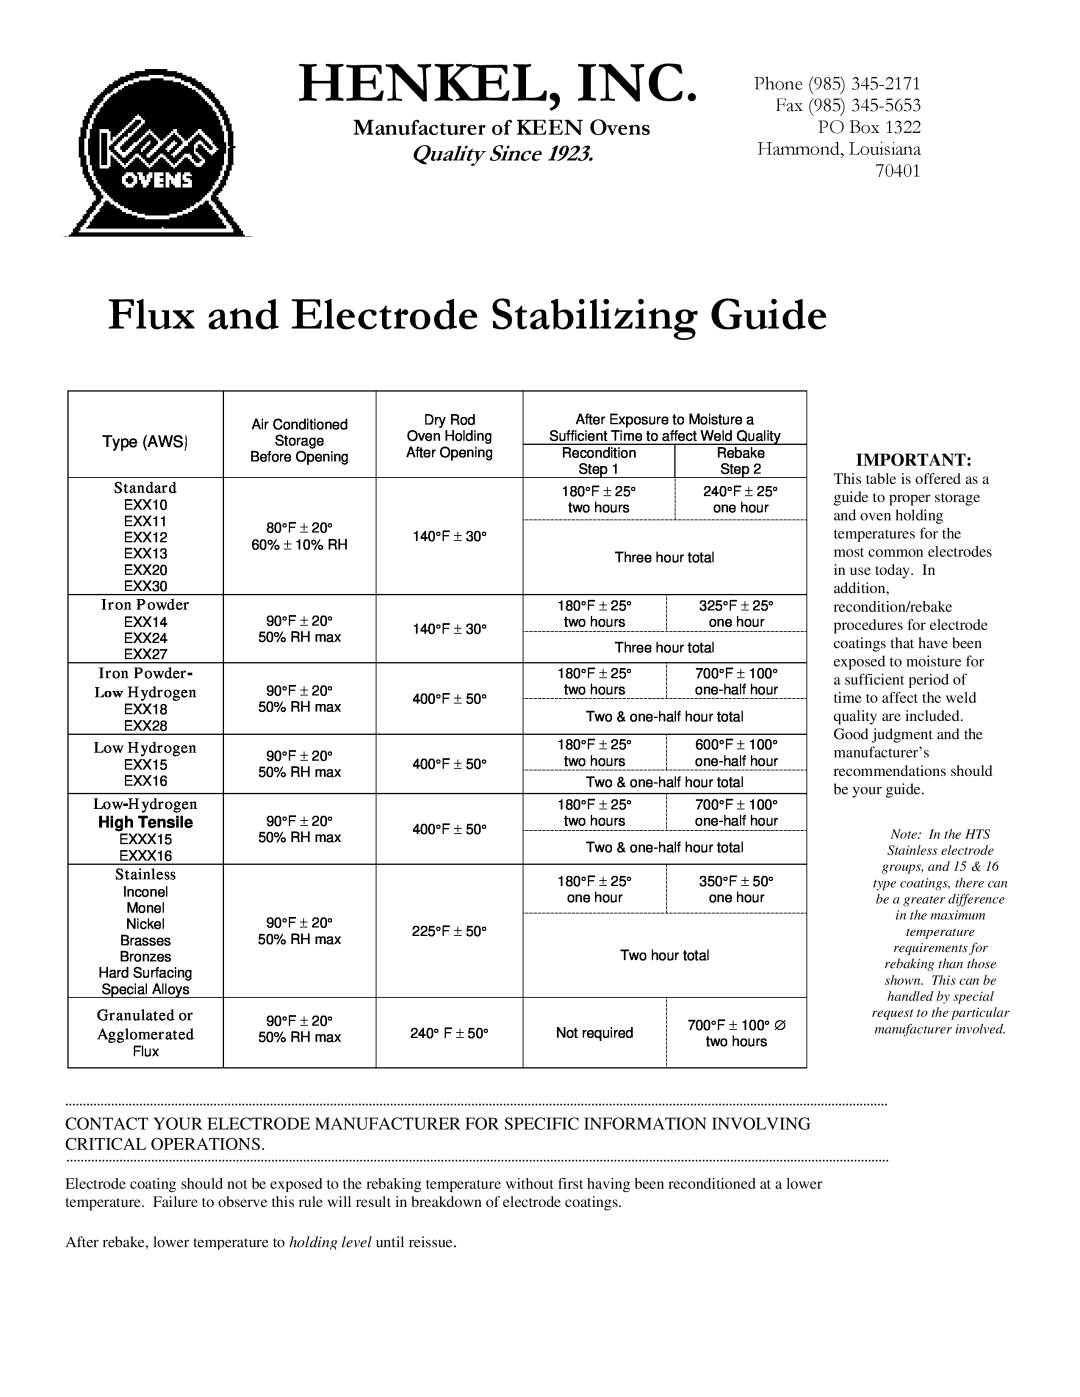 Henkel K-50 manual Henkel, Inc, Flux and Electrode Stabilizing Guide, Manufacturer of KEEN Ovens, Quality Since, Standard 